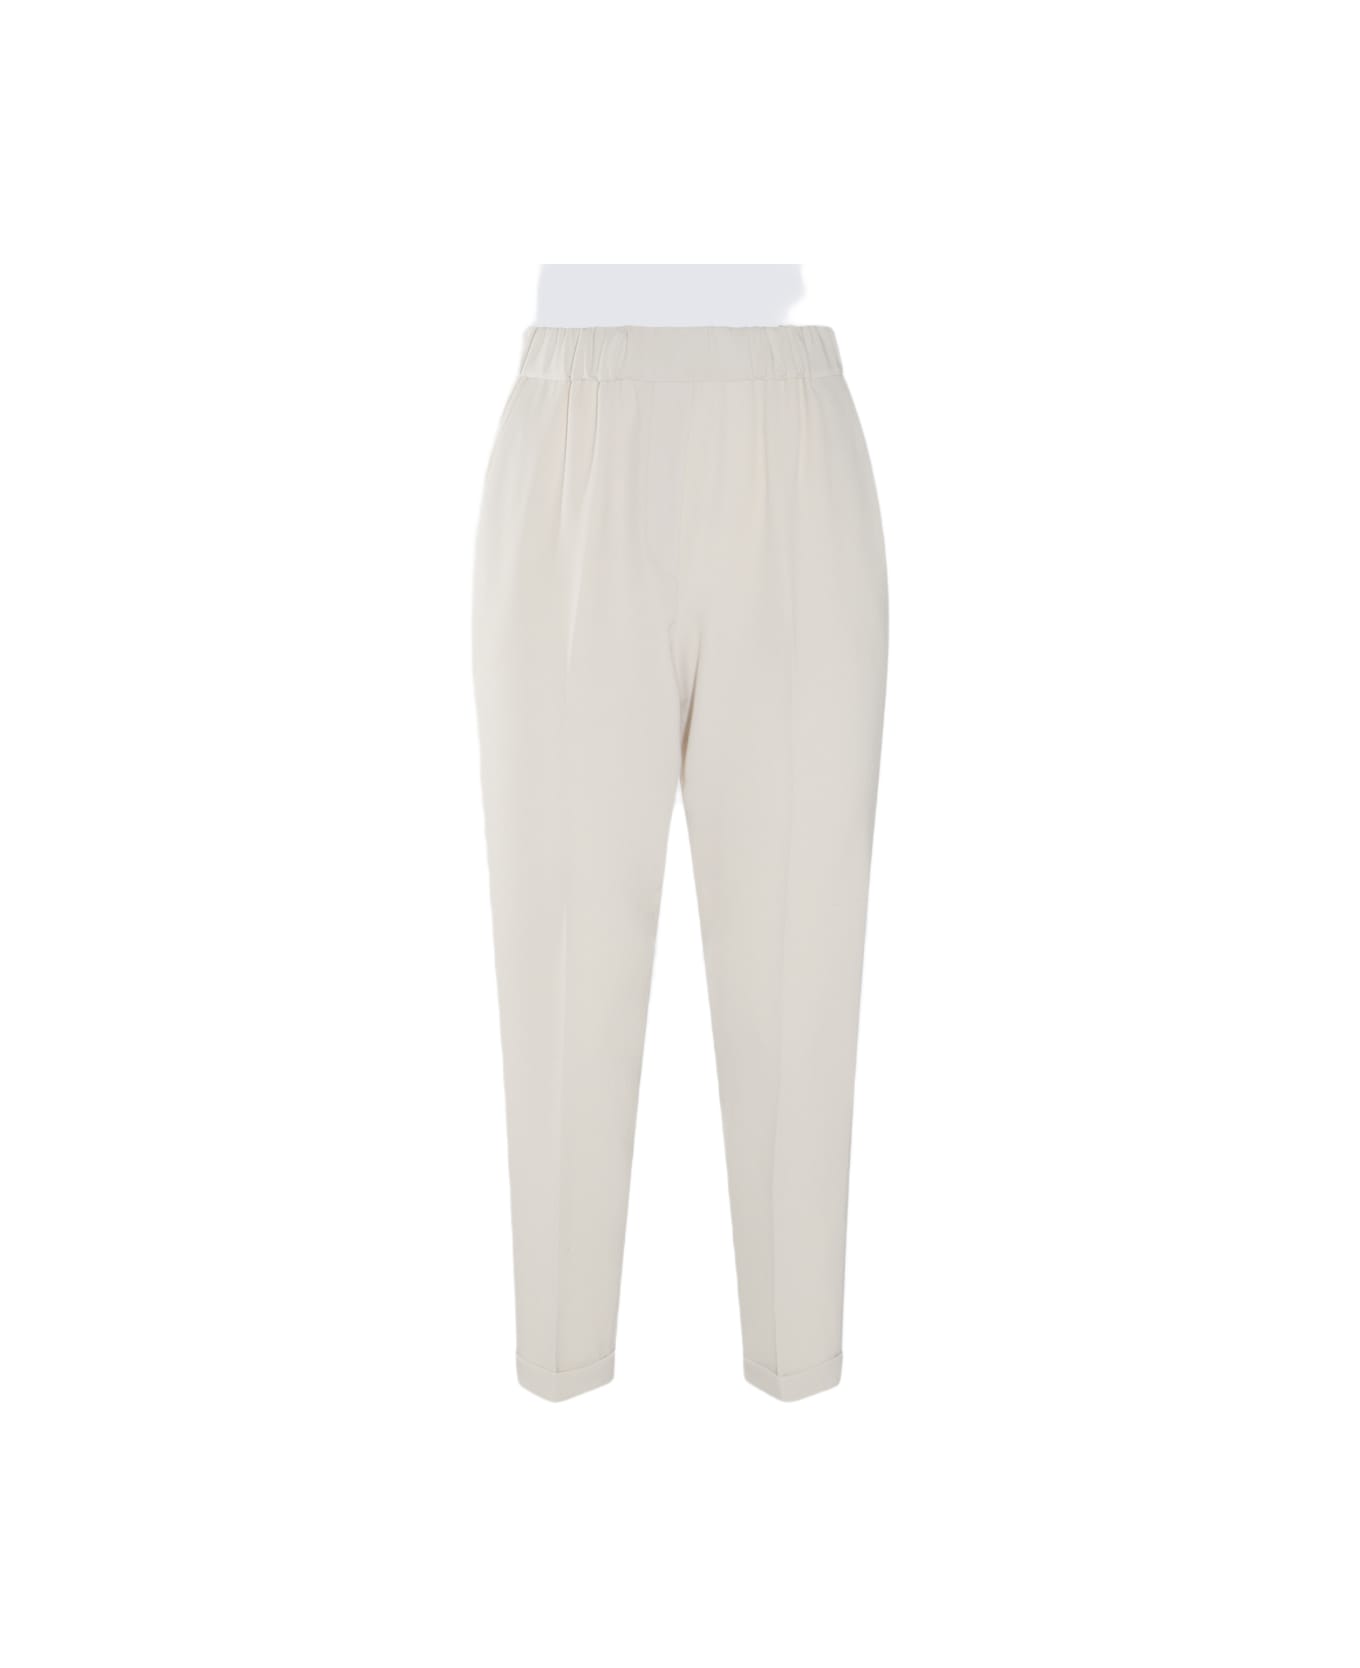 Antonelli White Cotton Pants - White